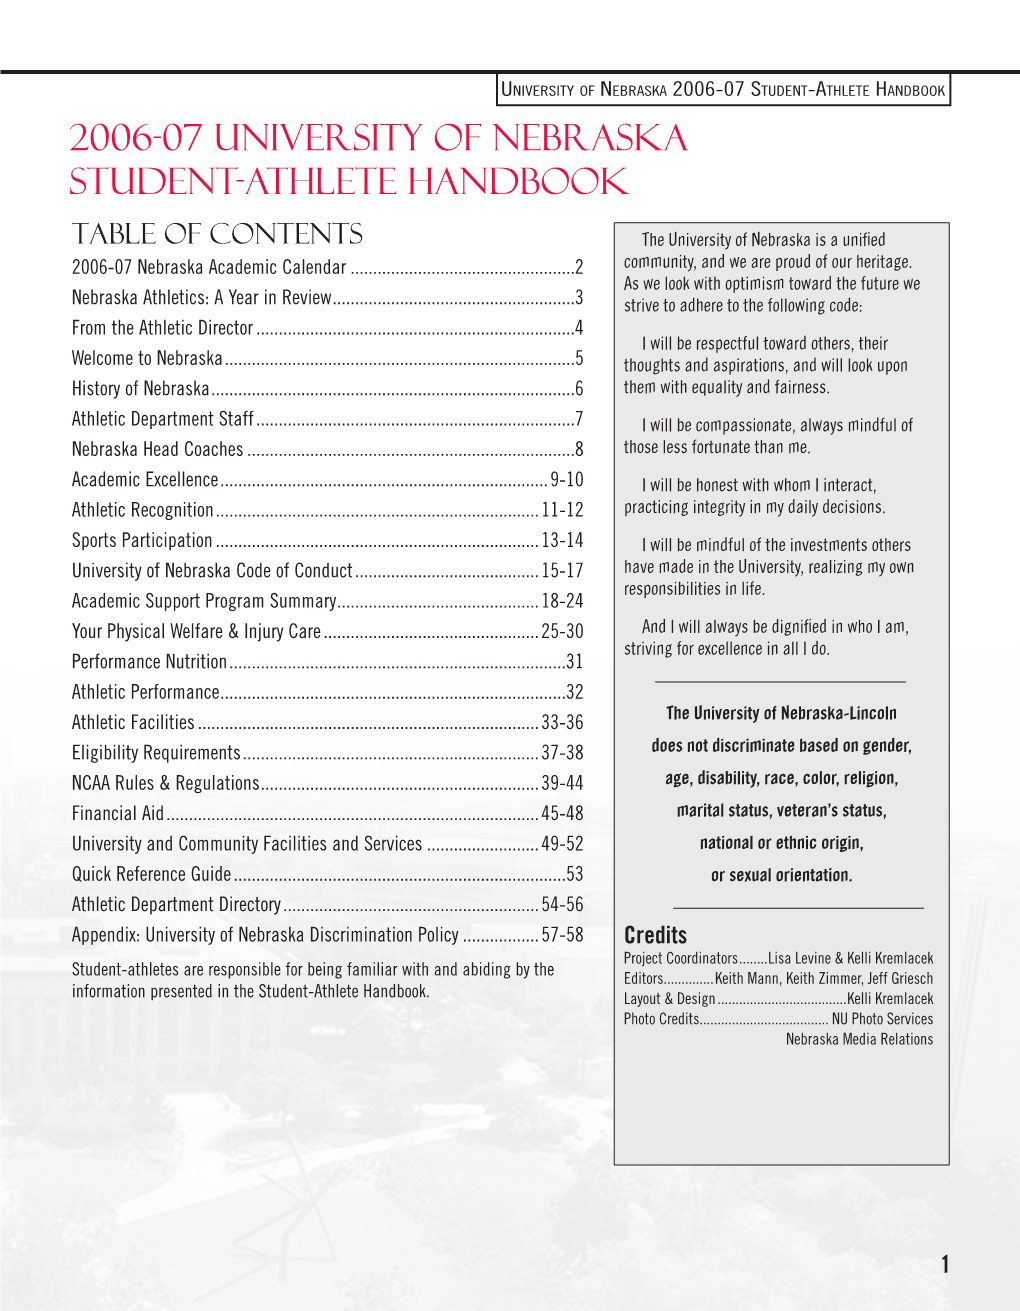 2006-07 University of Nebraska Student-Athlete Handbook